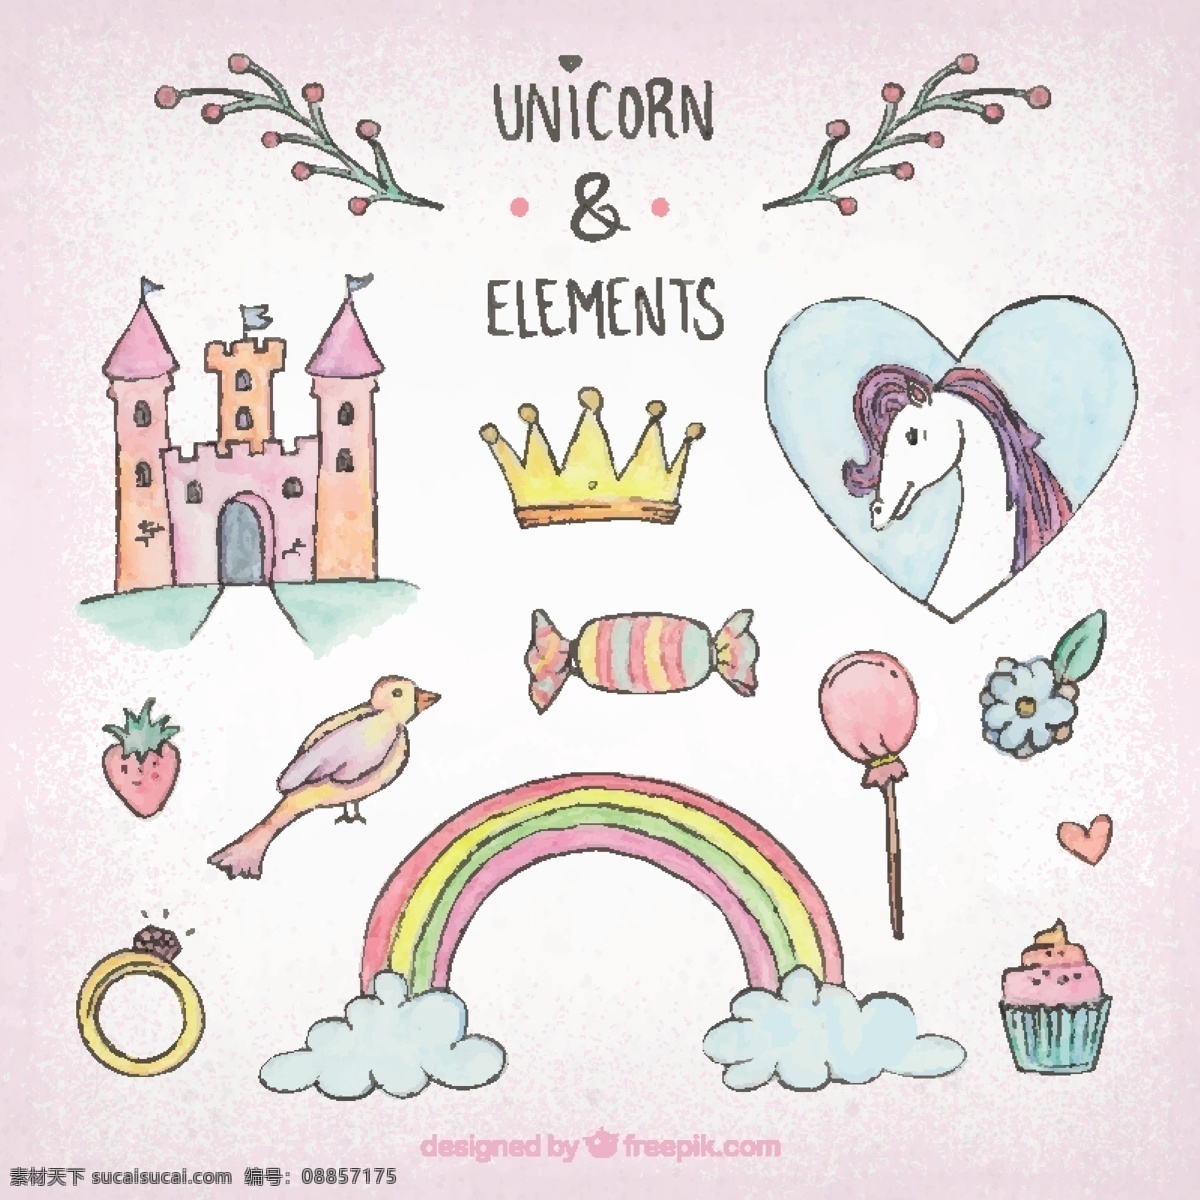 麒麟城堡元素 皇冠 动物 蛋糕 糖果 彩虹 马 可爱的 城堡 甜 环 魔术 童话 元素 可爱 幻想 独角兽 故事 包 喇叭